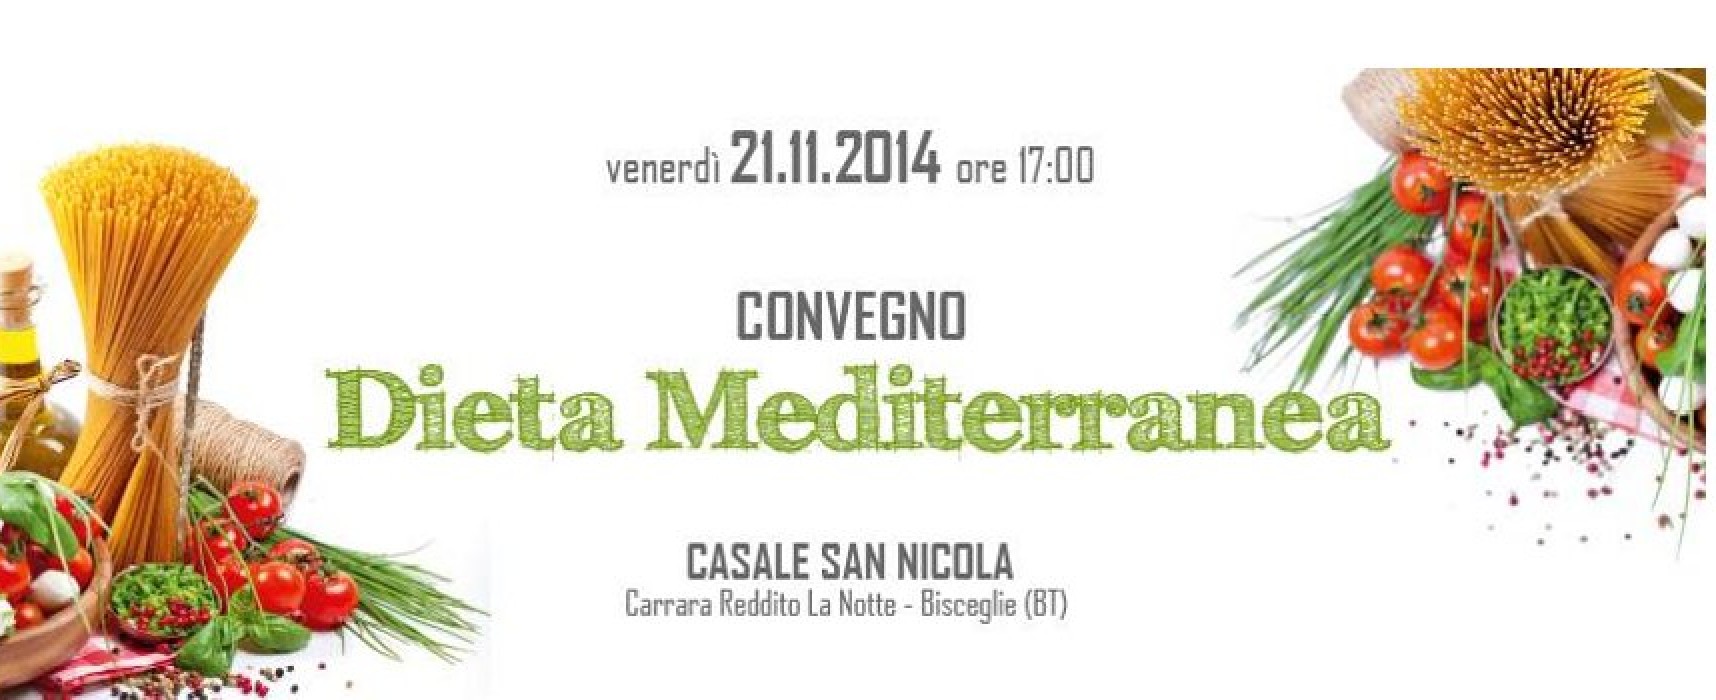 “Dieta Mediterranea”: tutto quello che c’è da sapere domani in un convegno